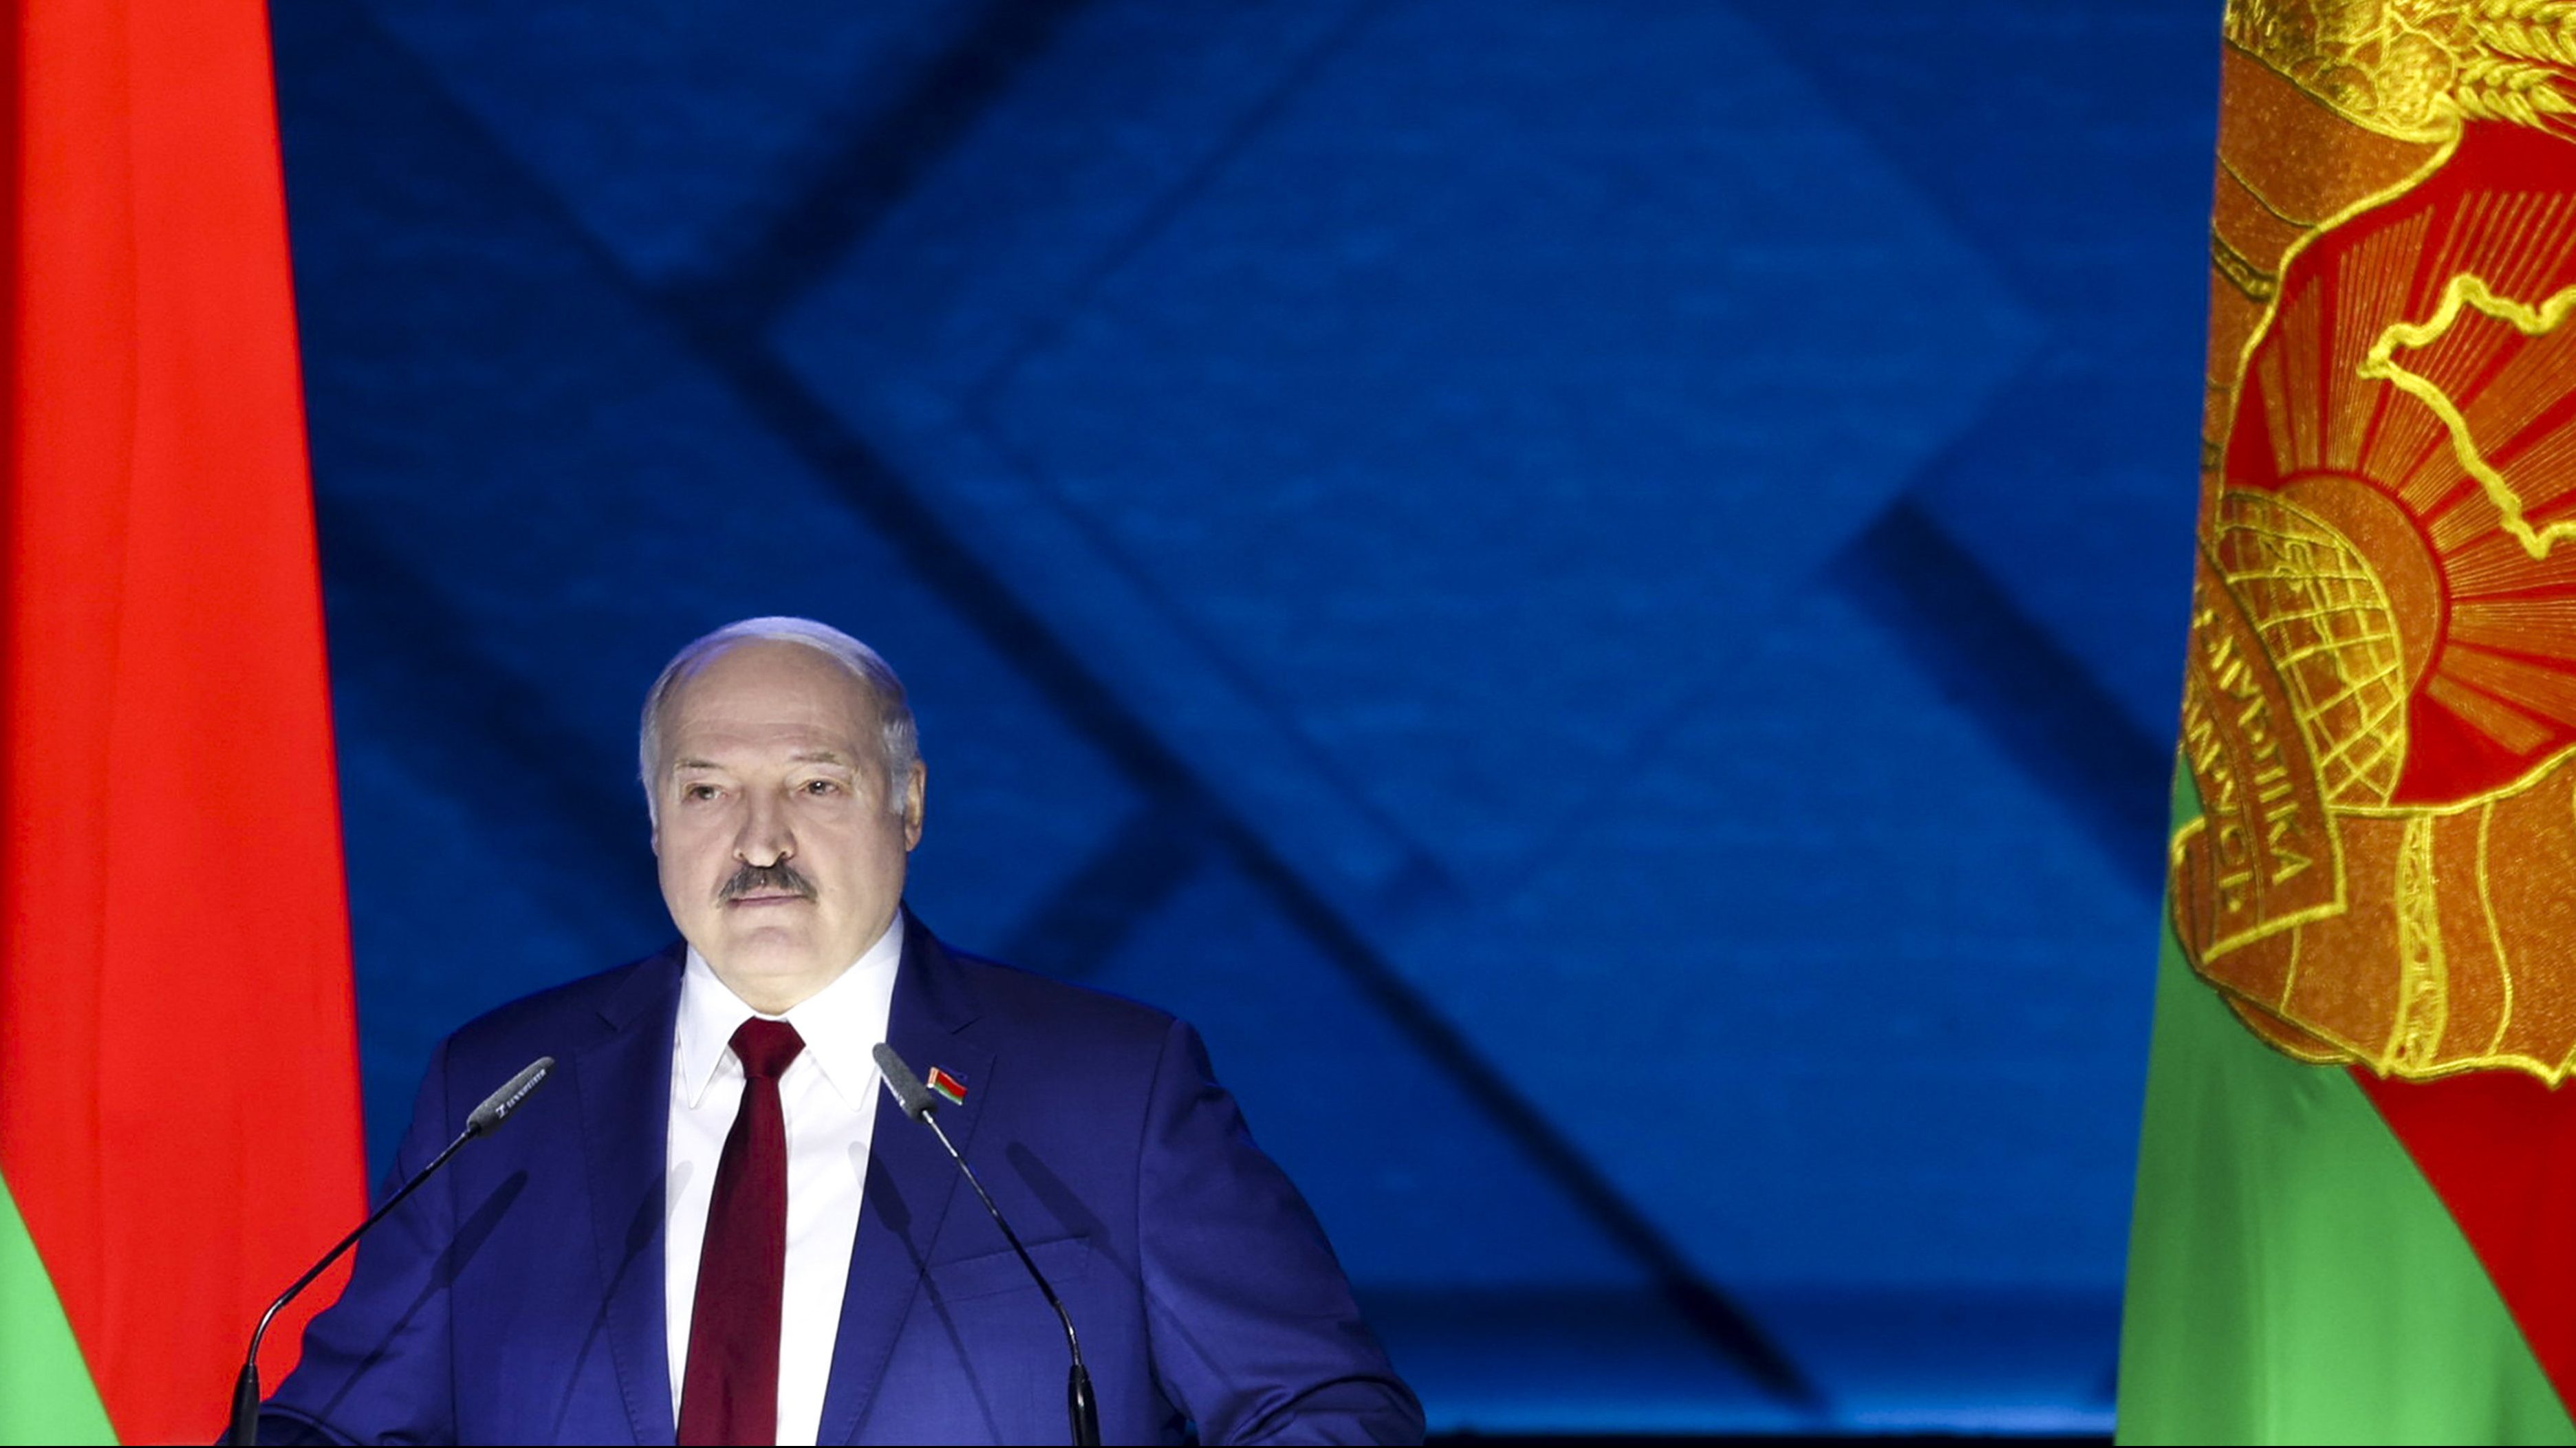 Lukasenka elkezdett atomfegyverek befogadásáról beszélni